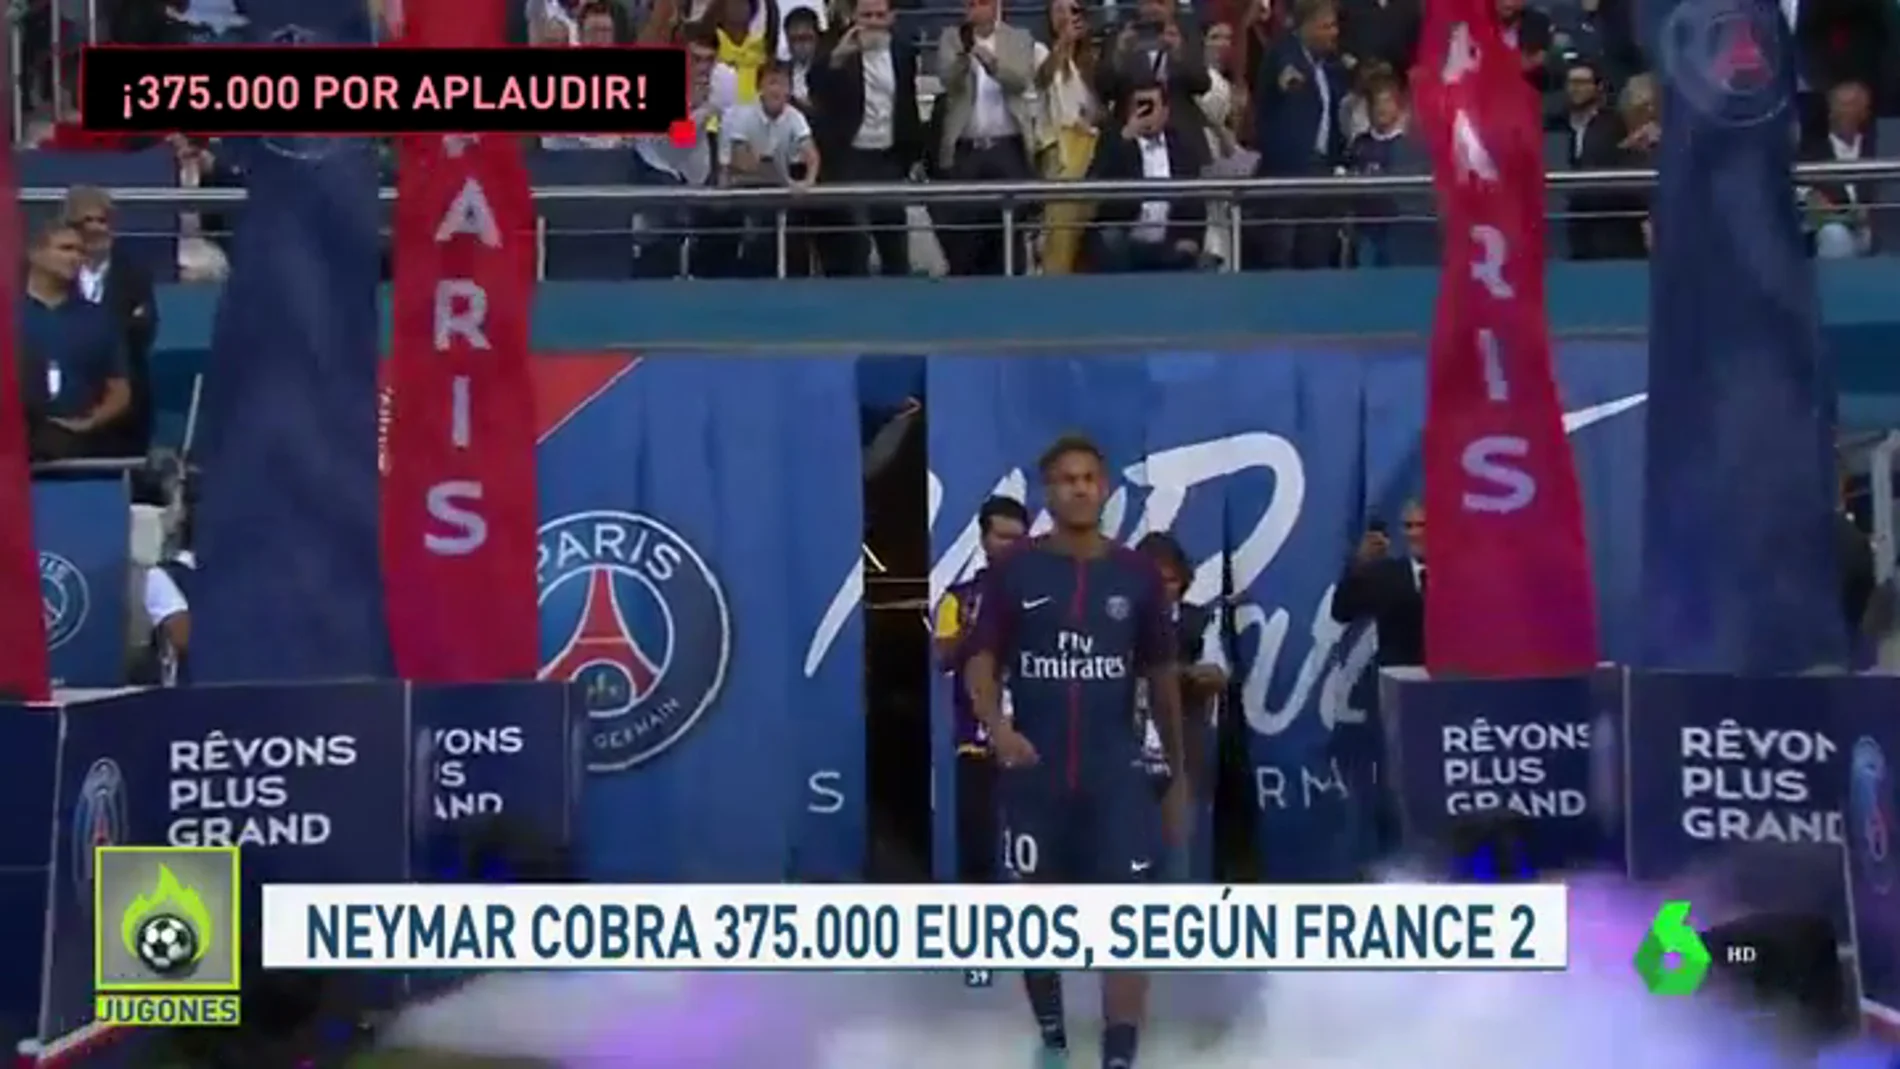 Las primas de algunos jugadores del PSG por respetar el código ético: Neymar cobra 375.000 por aplaudir a la afición tras los partidos